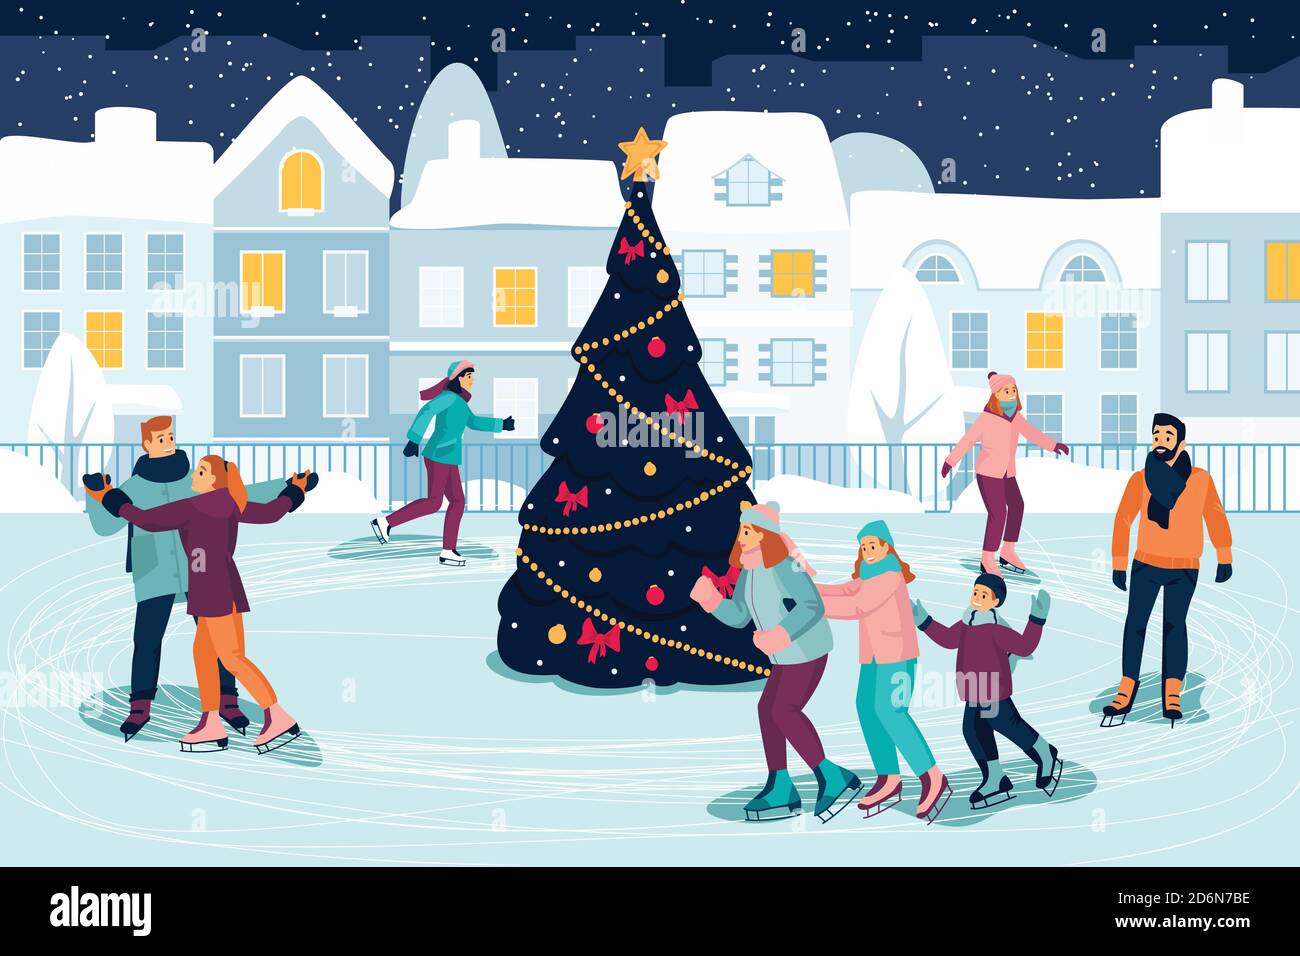 Les jeunes heureux patinent sur la patinoire autour de l'arbre de Noël décoré. Illustration de dessin animé à plan vectoriel. Vacances du nouvel an et événements familiaux en plein air Illustration de Vecteur